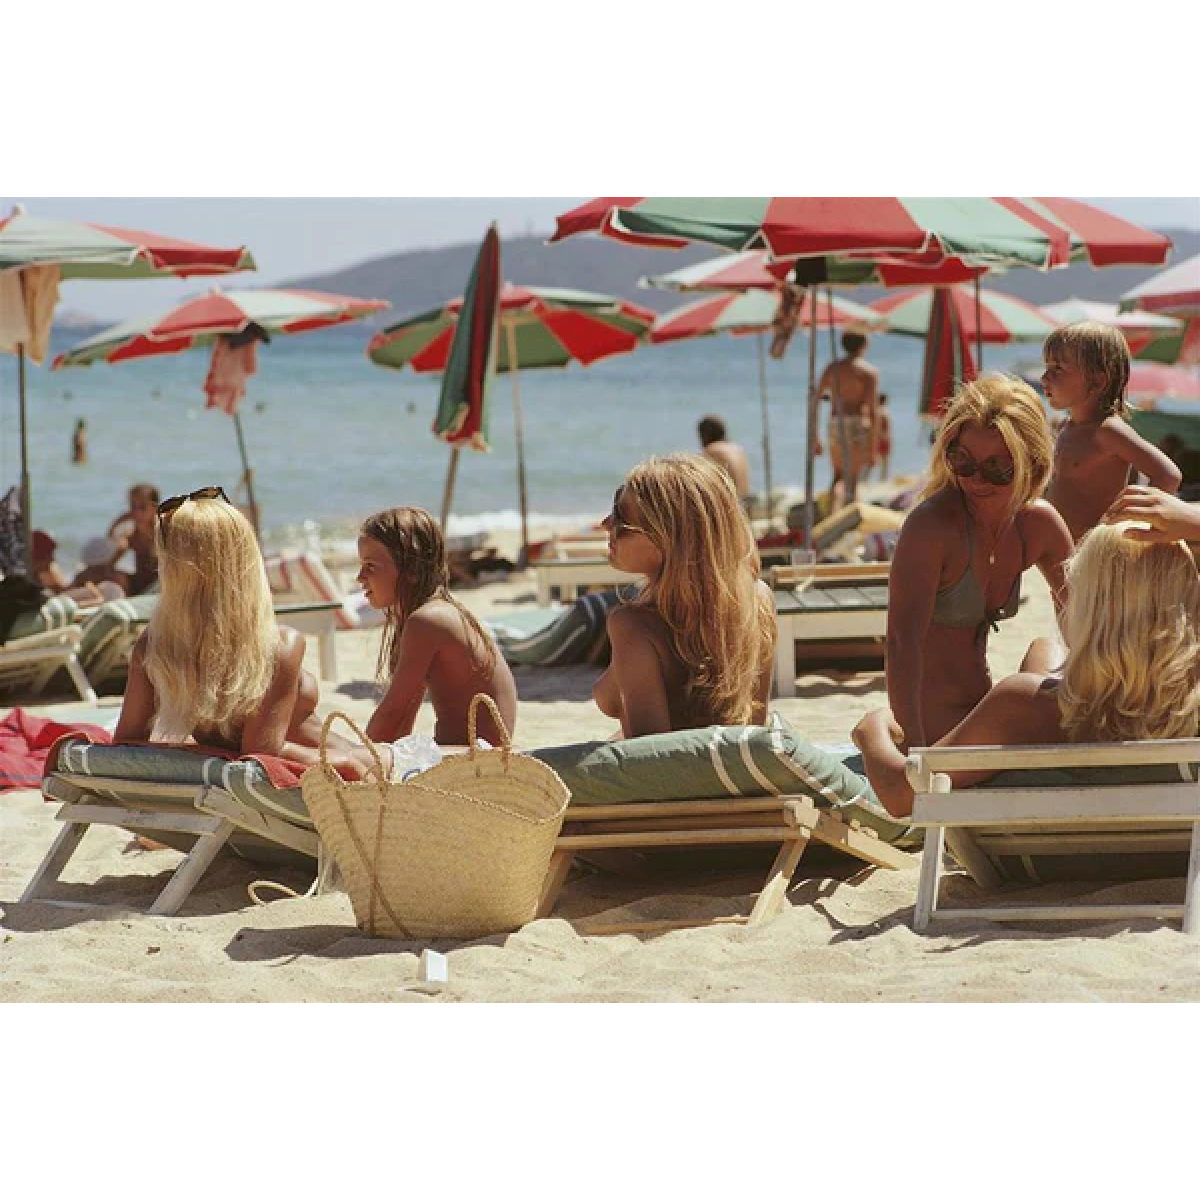 Saint-Tropez Topless Beach Print by Slim Aarons